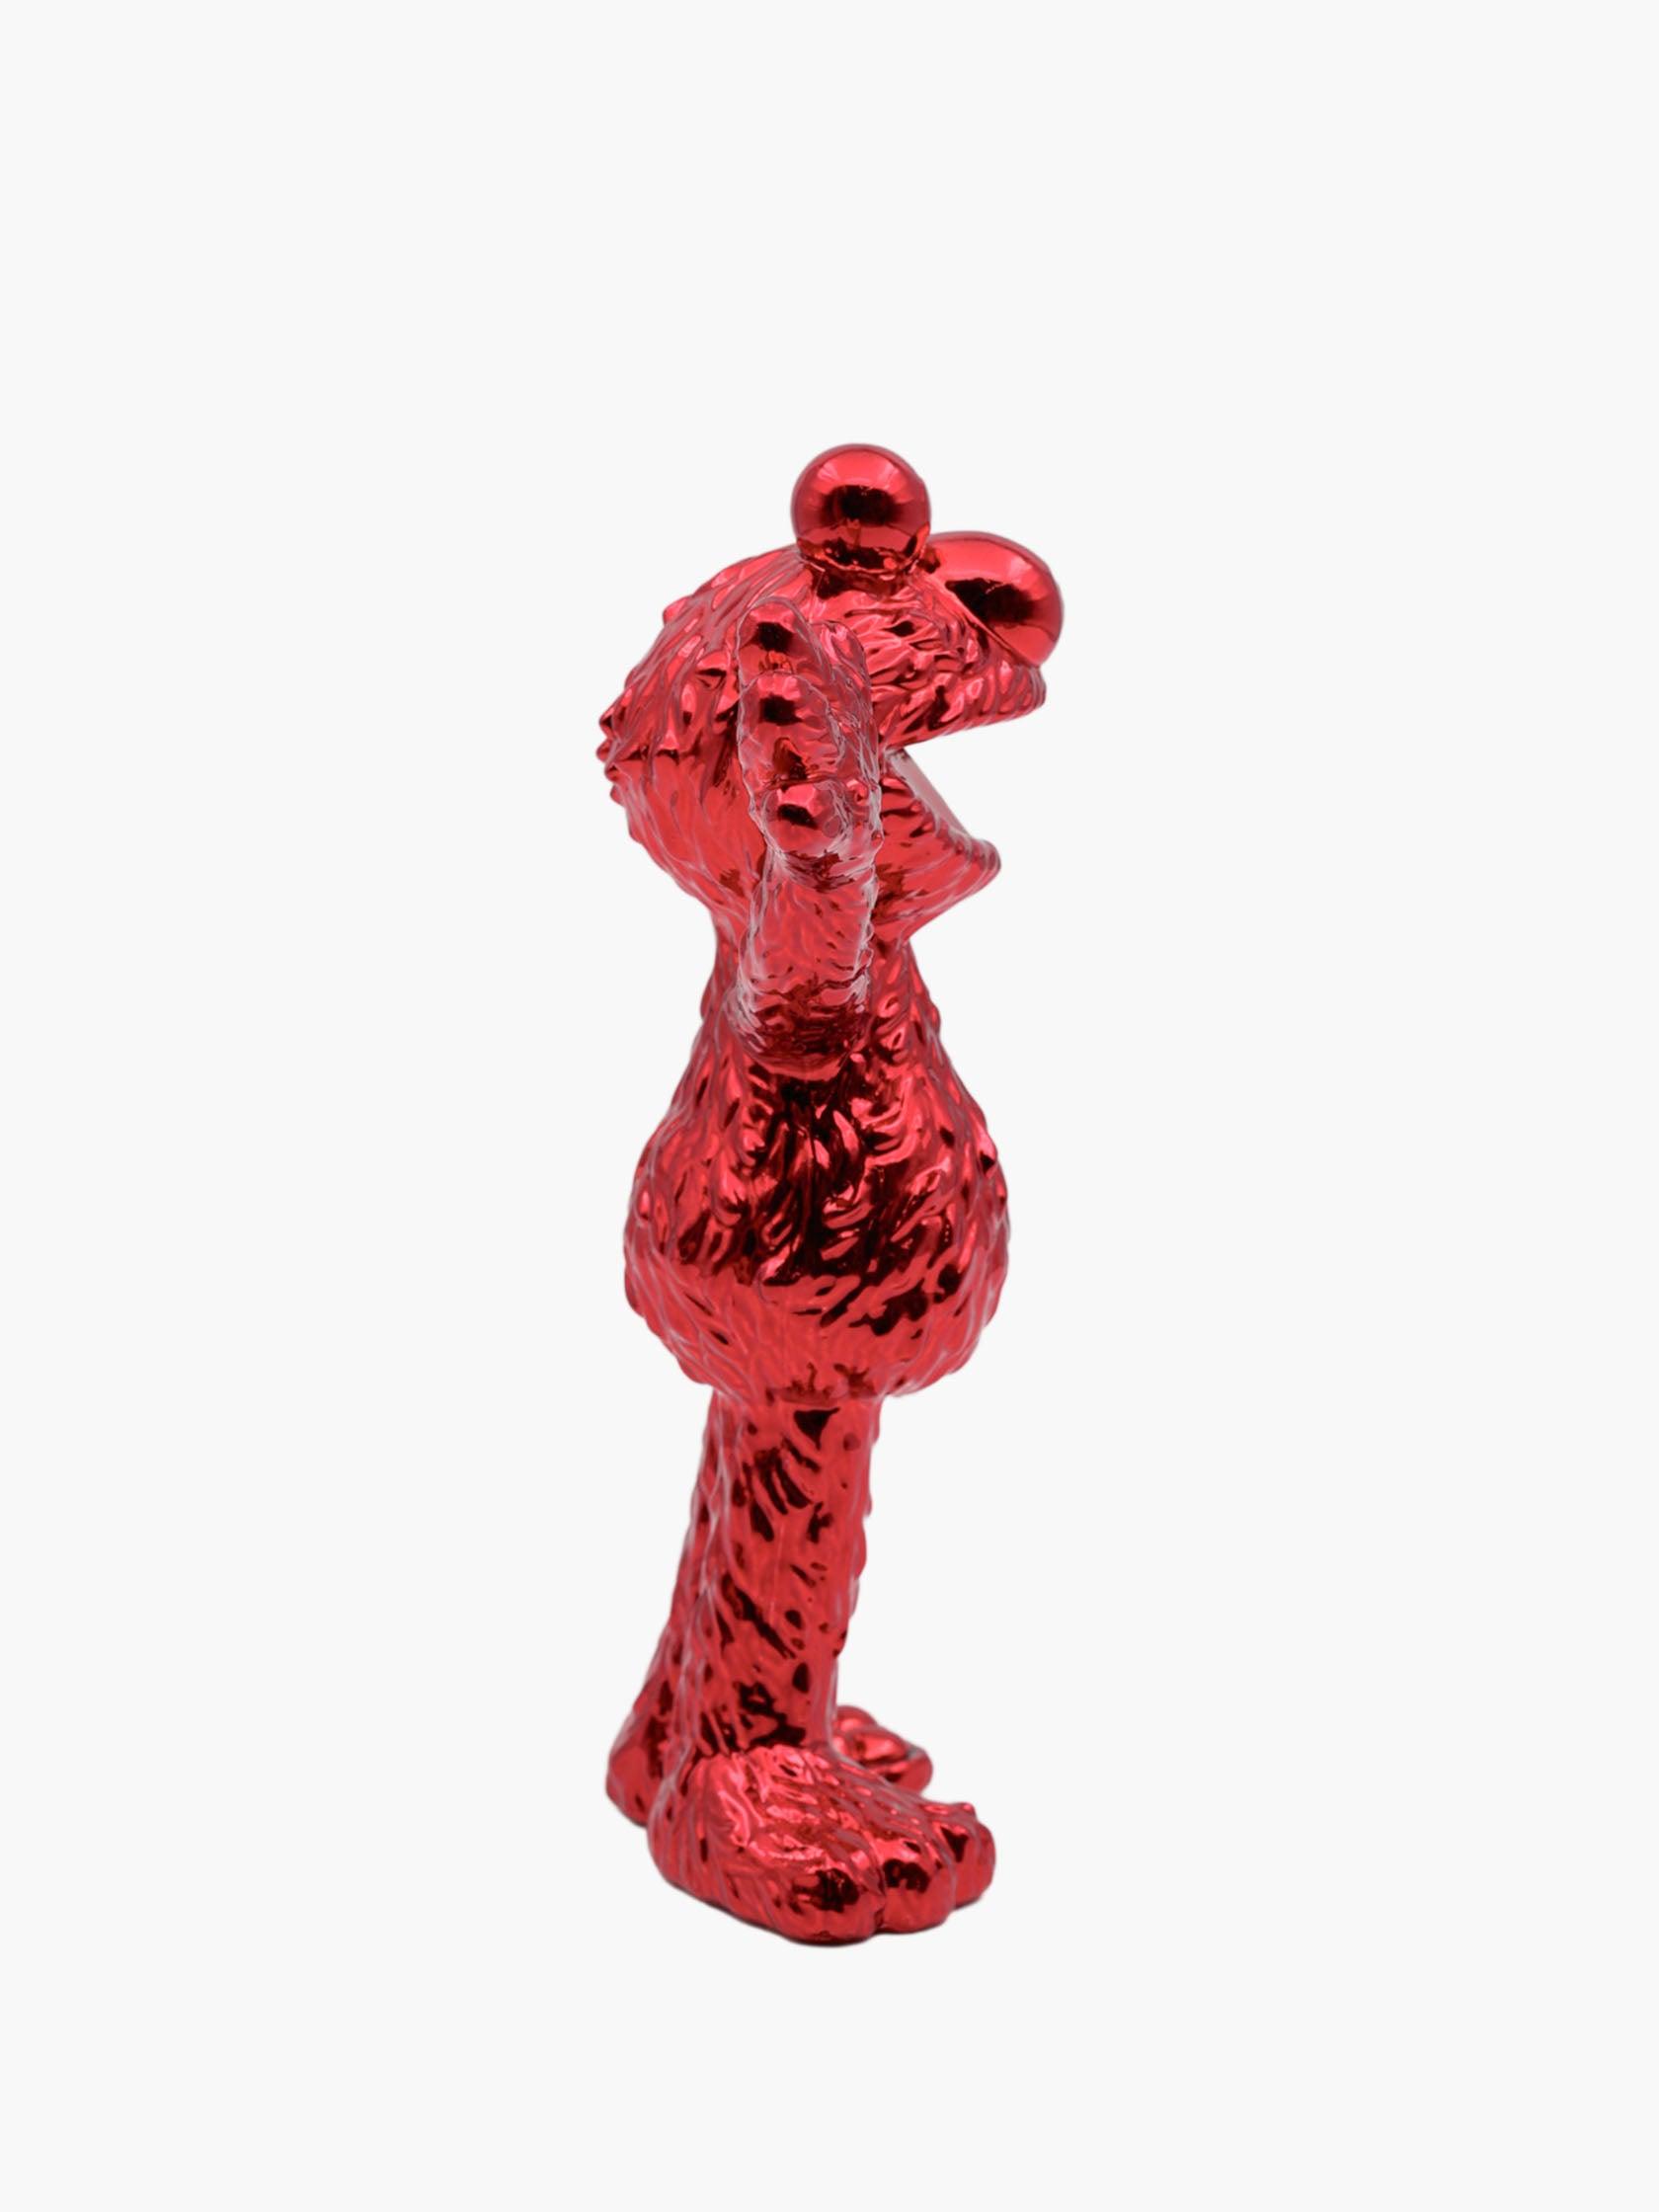 Jason Freeny XXRAY Plus x Mighty Jaxx Elmo (Chrome Red Edition) by Mighty Jaxx - Mankovsky Gallery